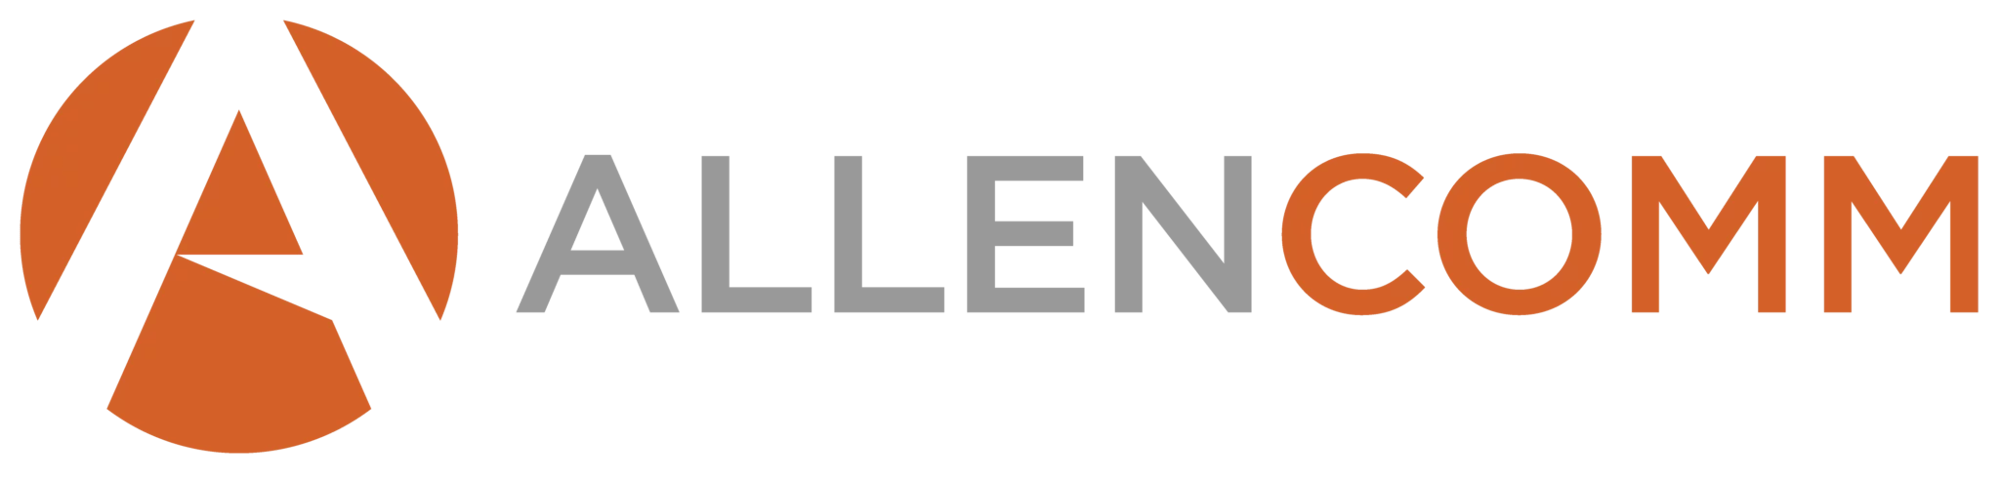 AllenComm Logo